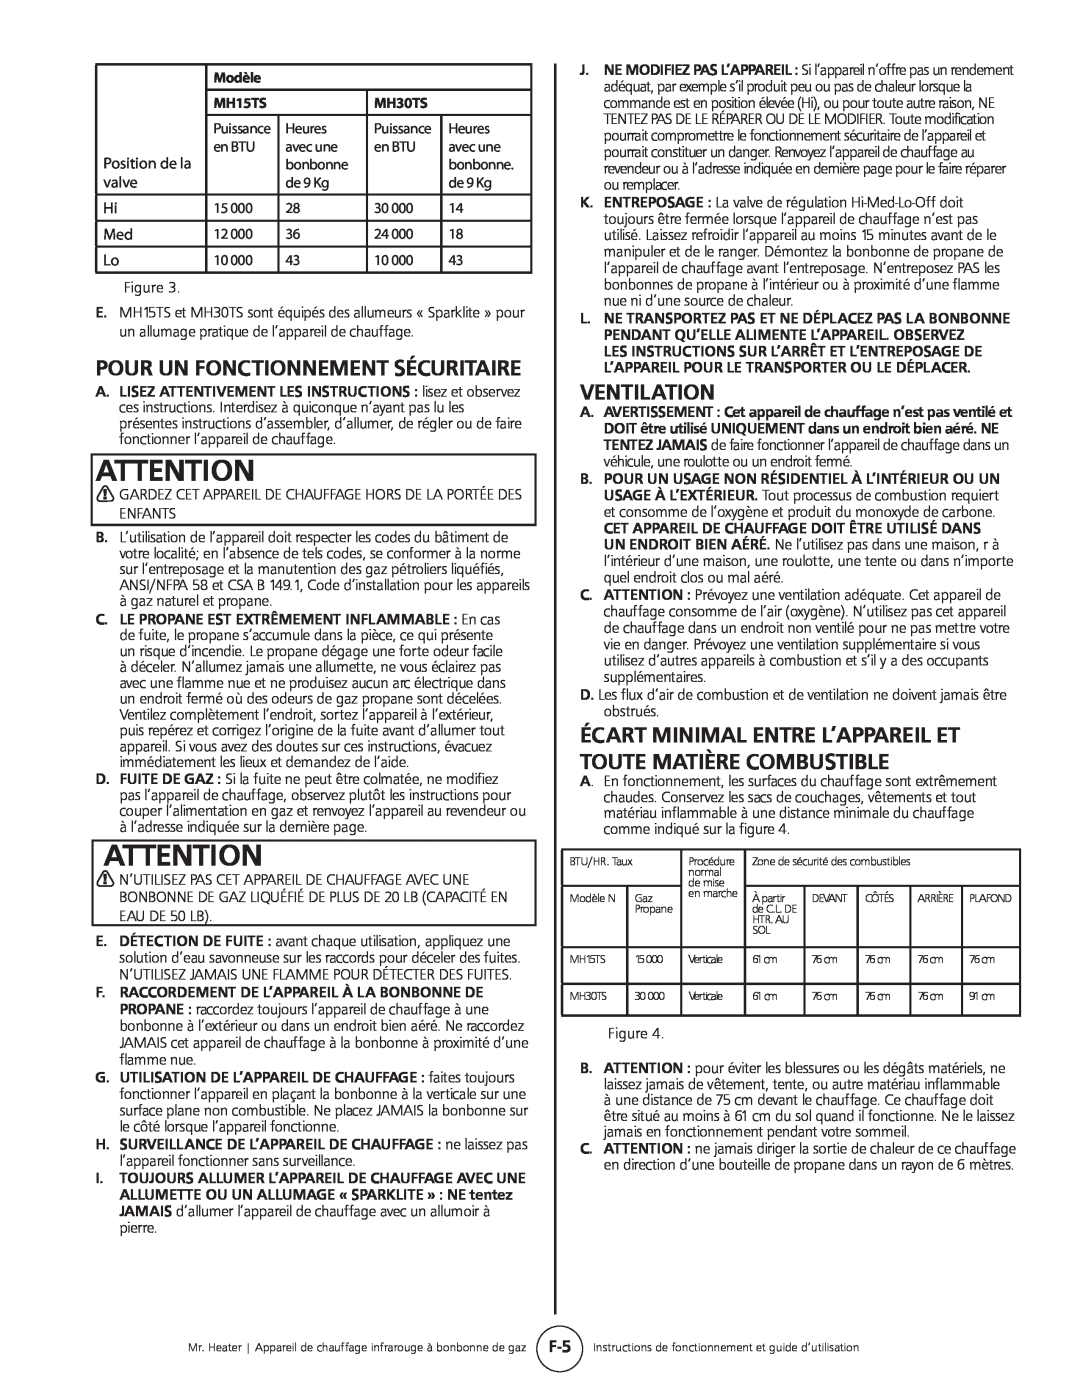 Mr. Heater MH15tS operating instructions Pour Un Fonctionnement Sécuritaire, Ventilation 